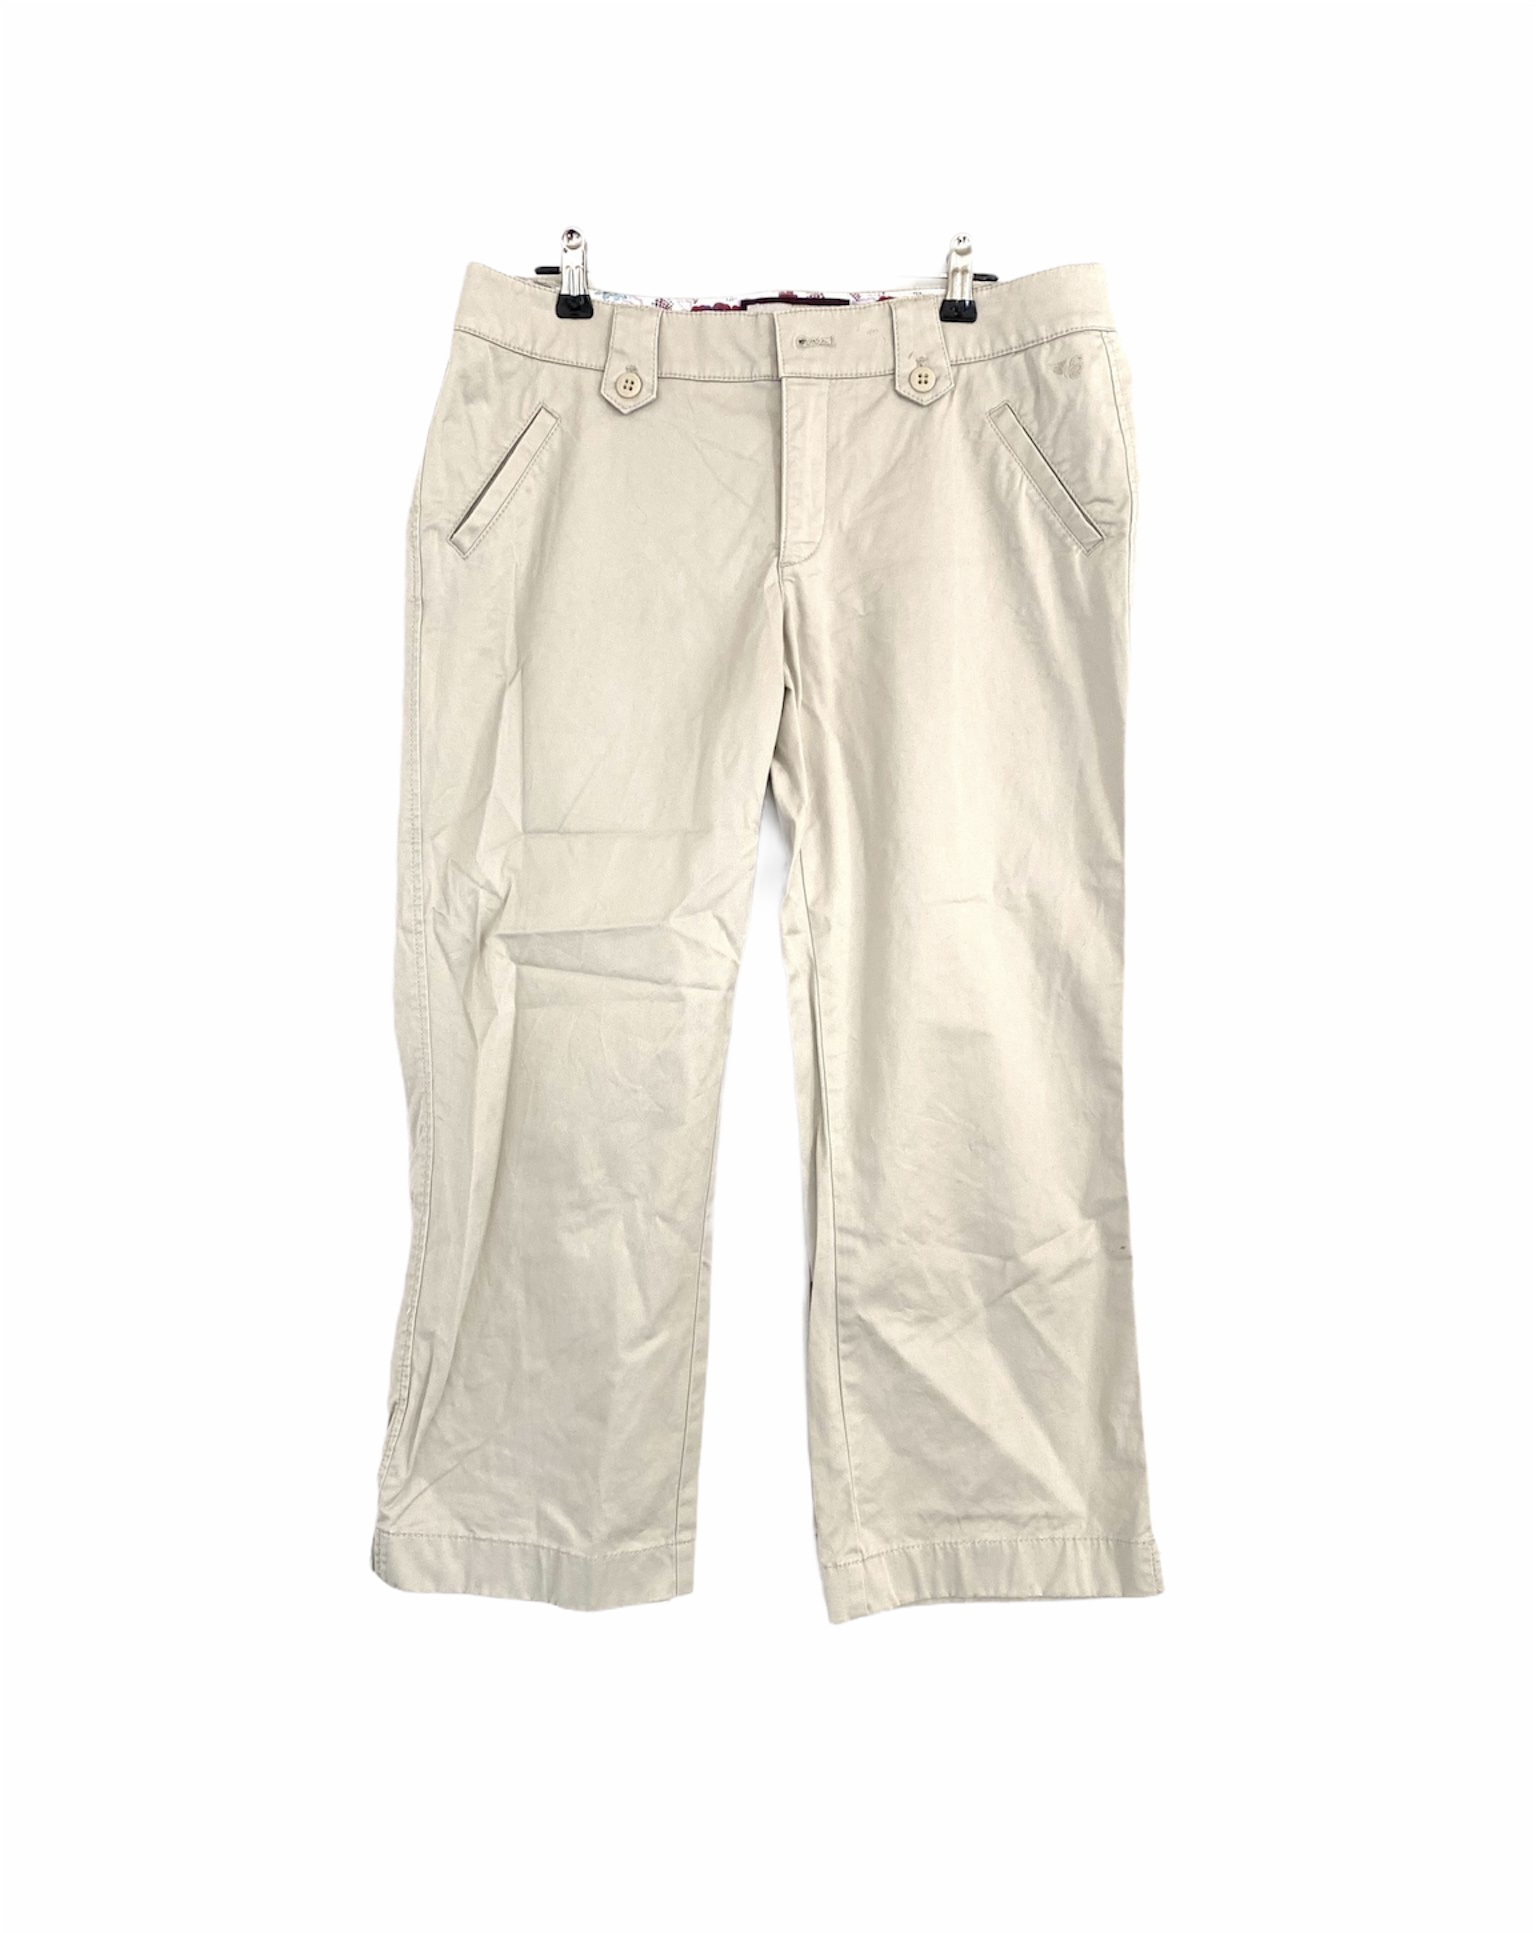 IMPERFECT Esprit Beige Crop Pants - Size 10 - The Re: Club